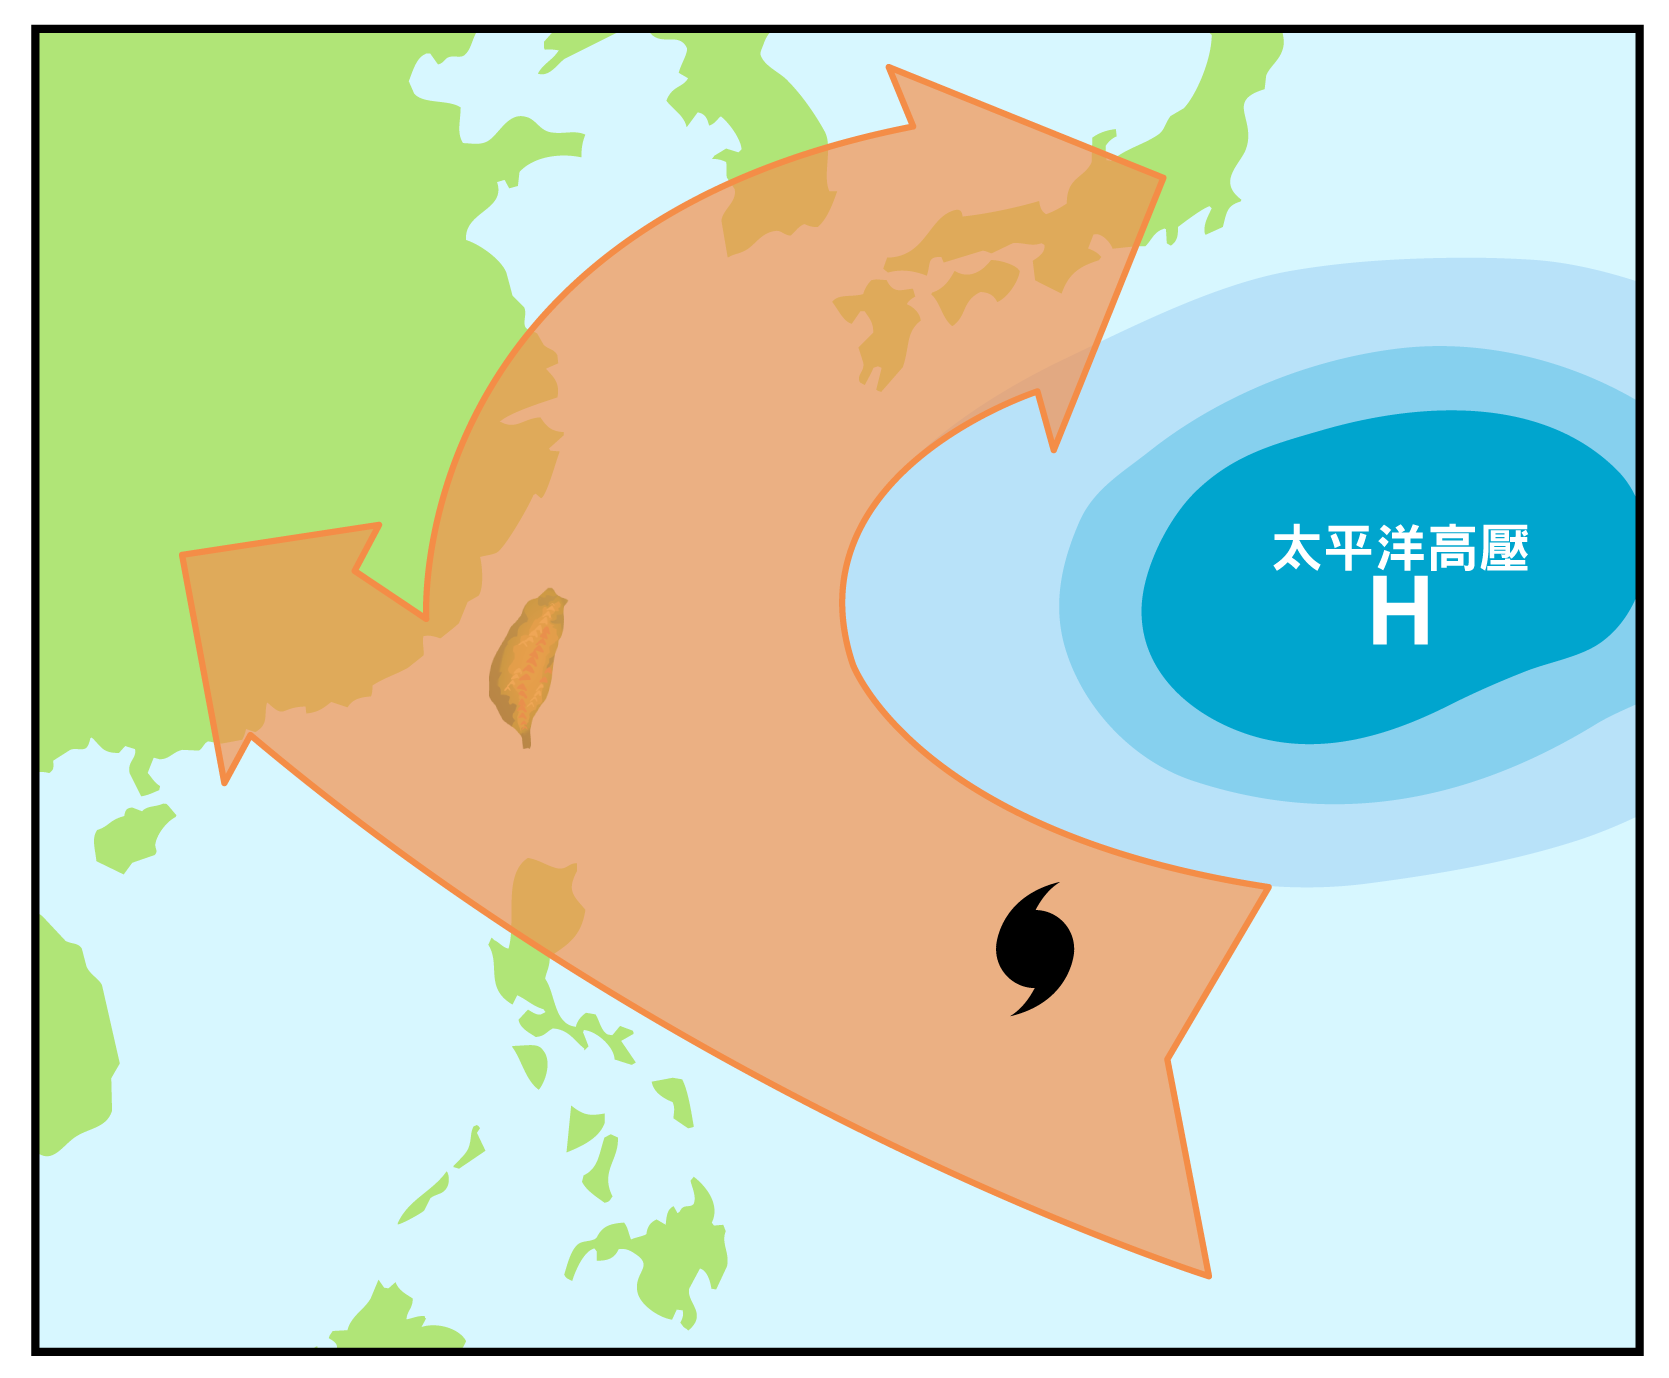 颱風形成後，受太平洋副熱帶高壓導引，通常會往西北方向前進，嚴重威脅東亞和東南亞國家。